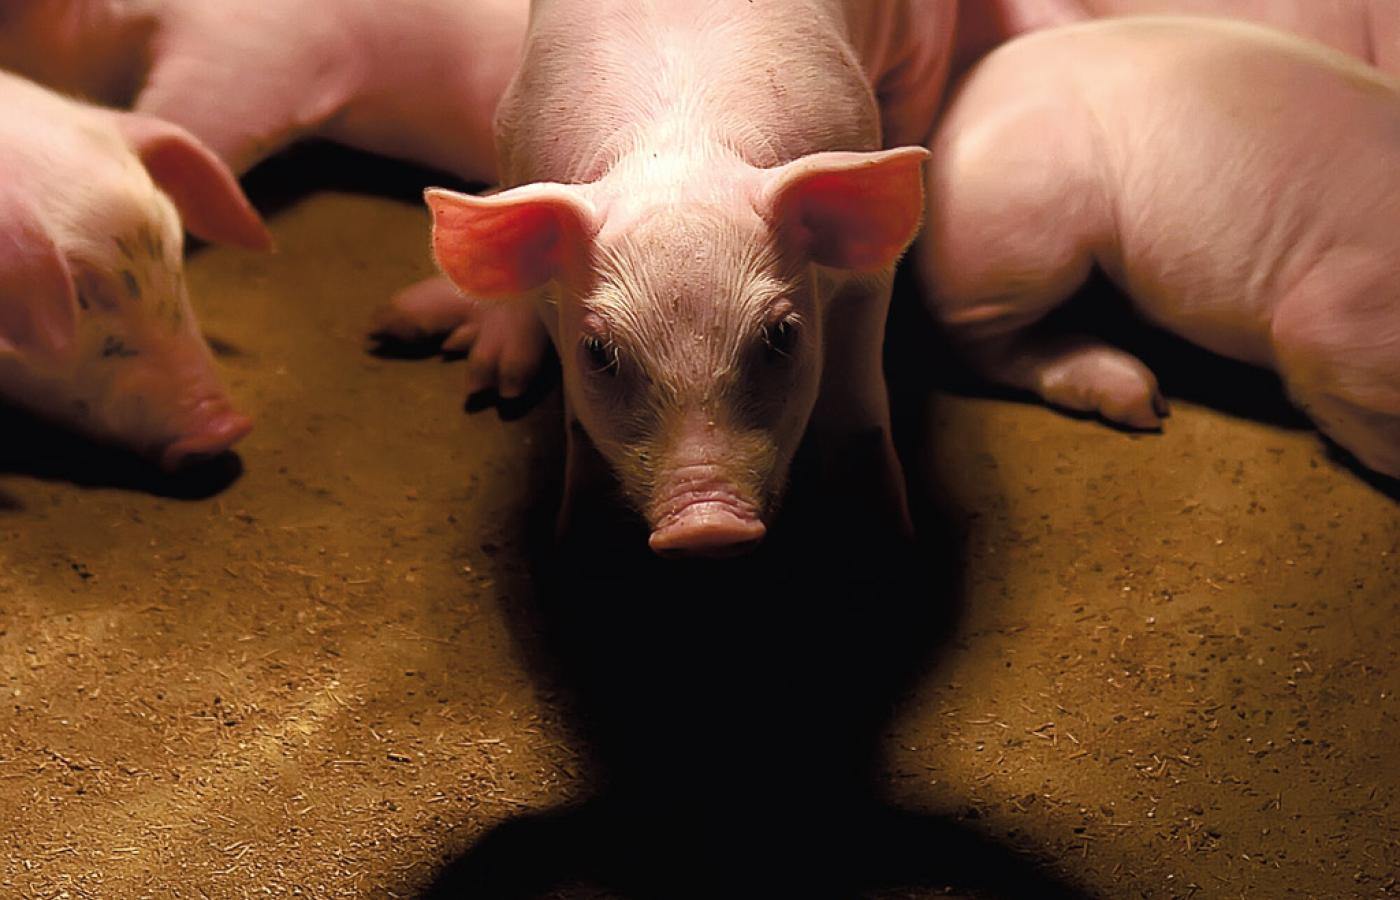 Świnie karmione mączką mięsno-kostną przybierają na wadze szybciej, zwiększając opłacalność hodowli.